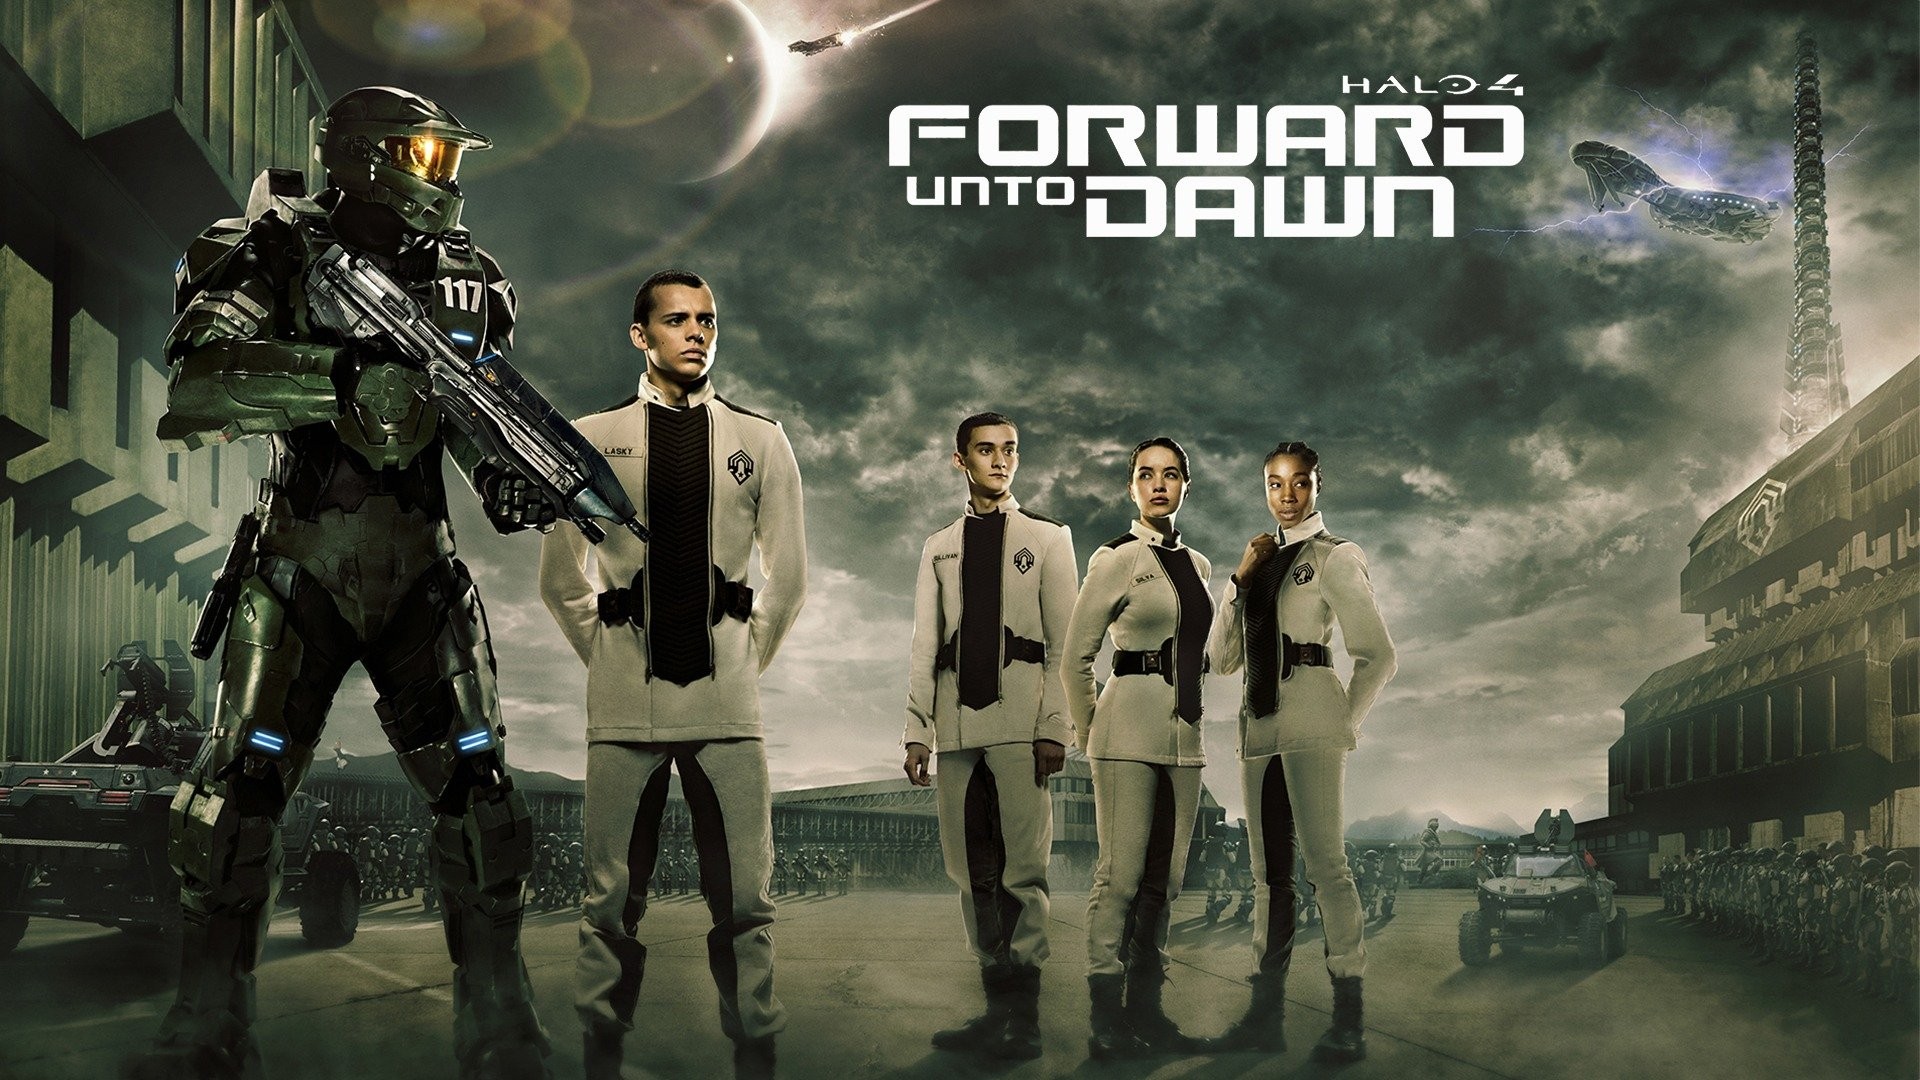 Halo 4: Forward Unto Dawn (2012)